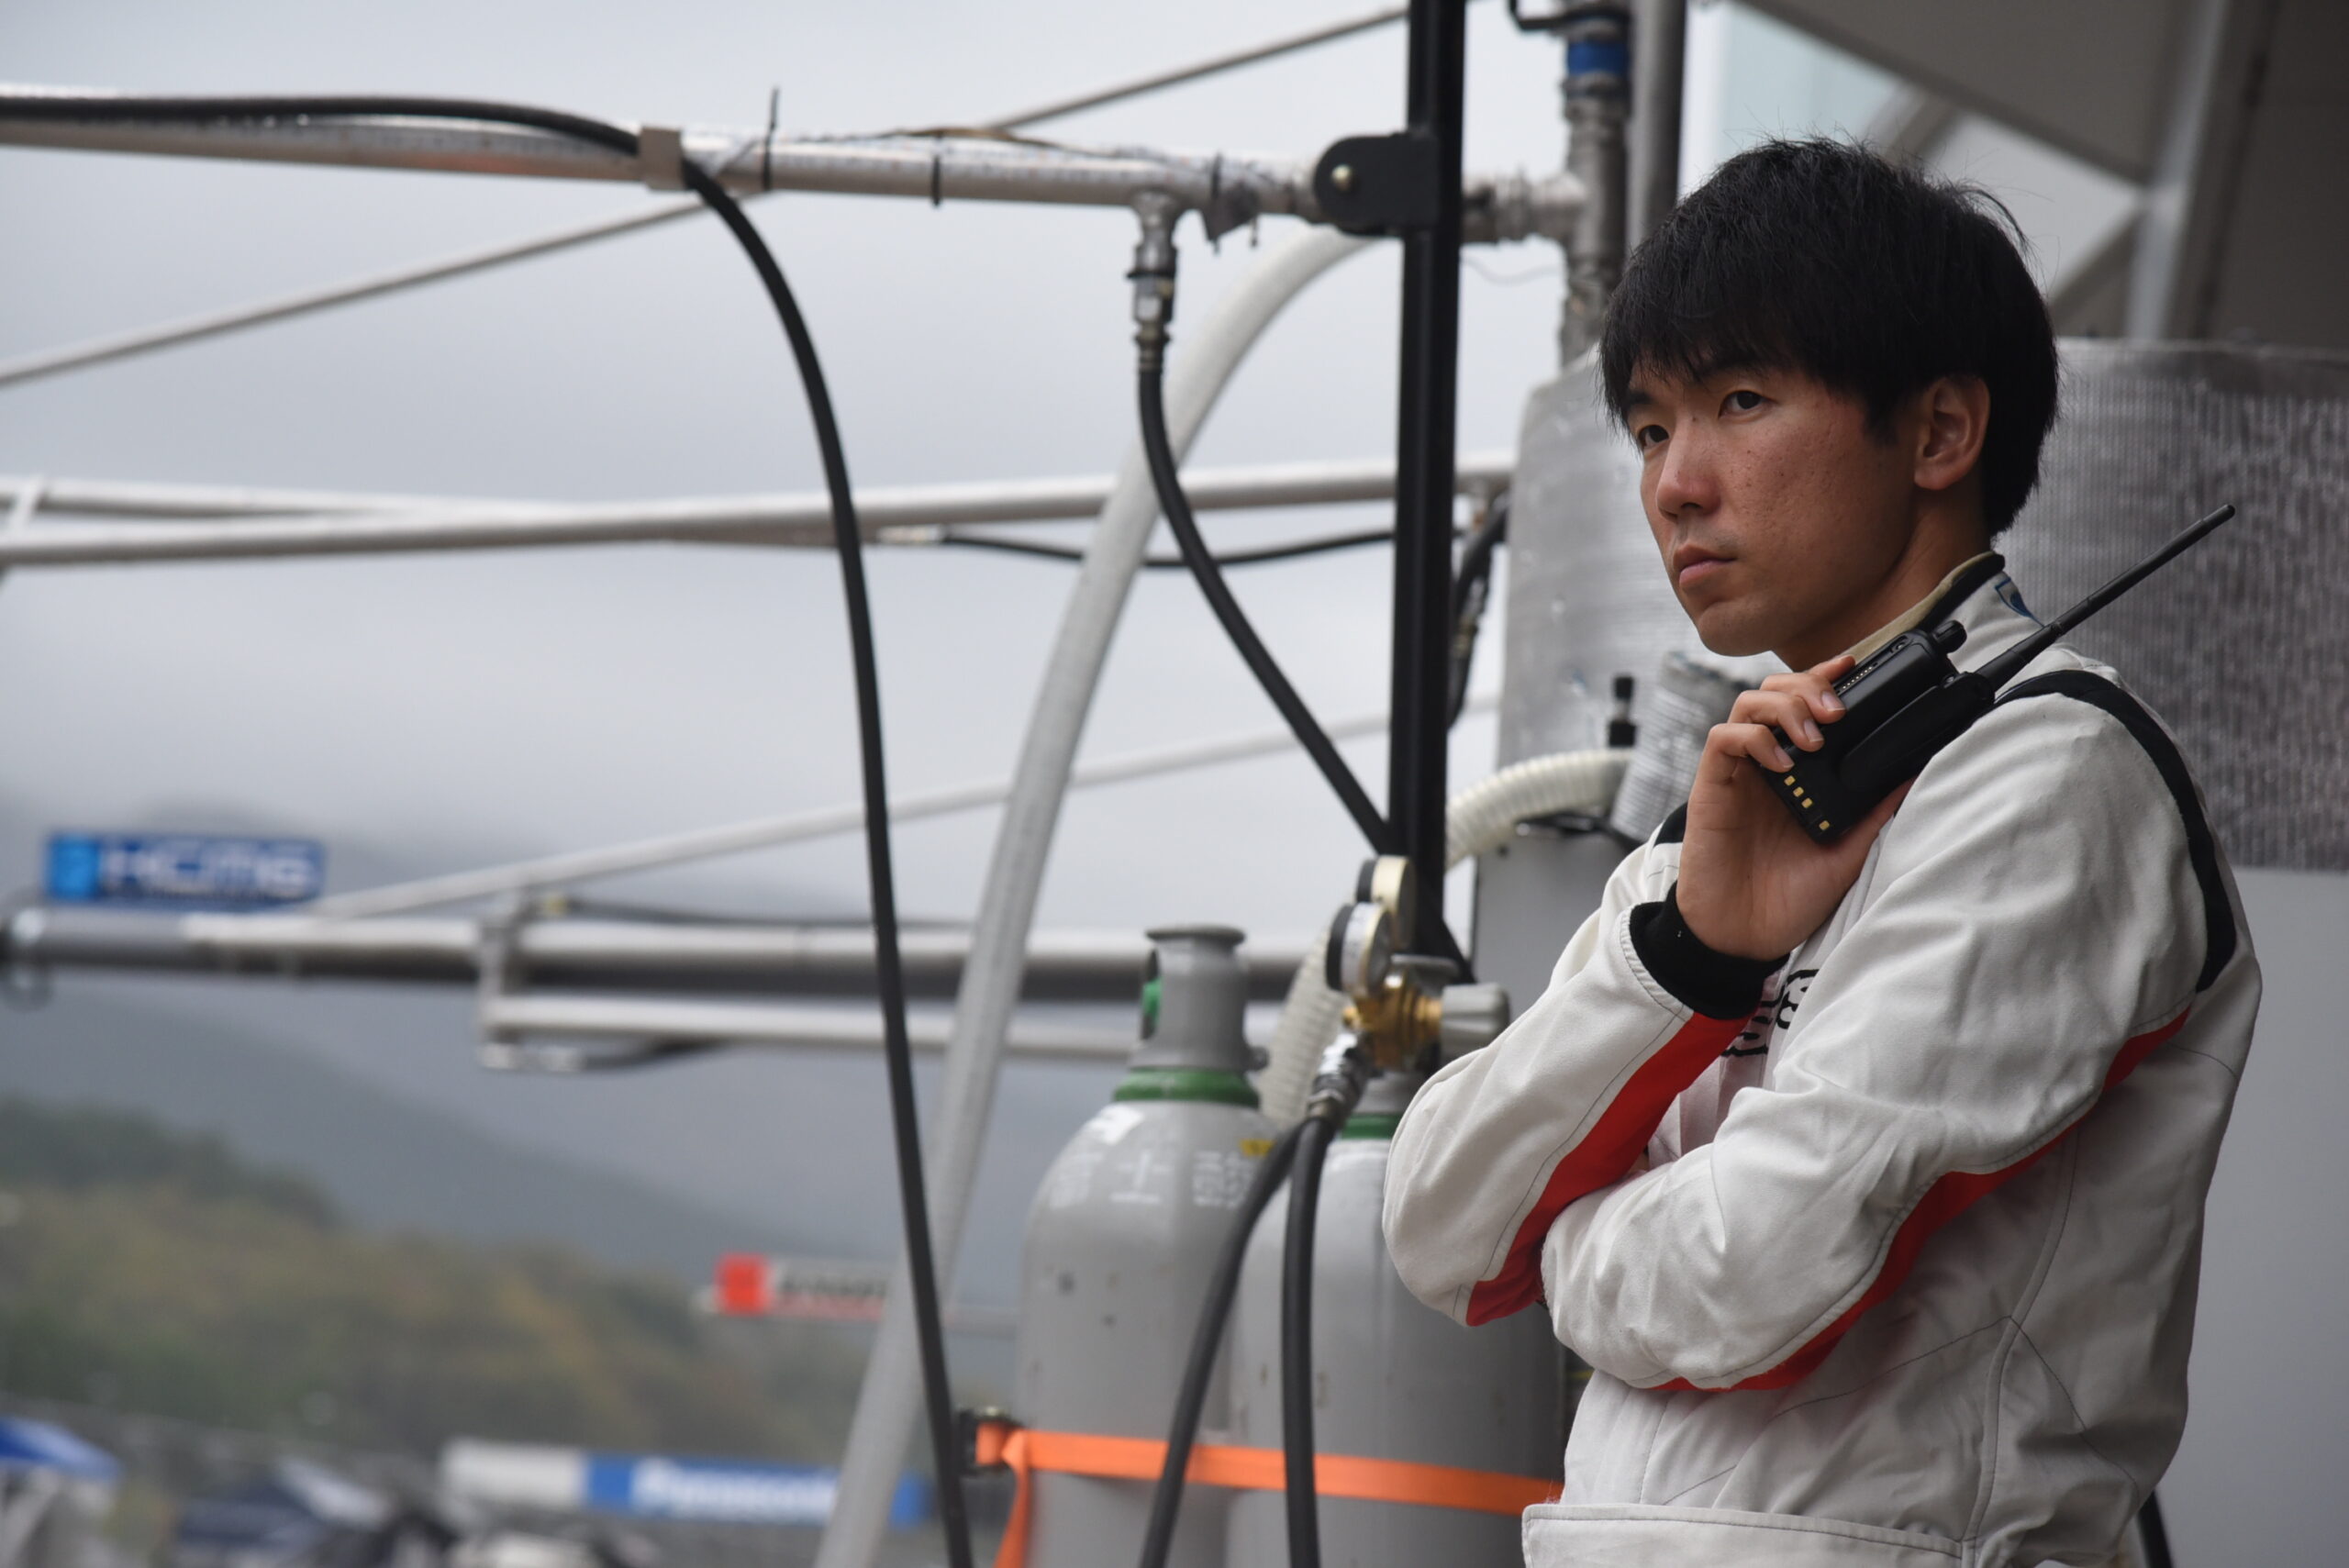 「スーパー耐久は通過点」ポルシェインストラクター鈴木翔也の挑戦